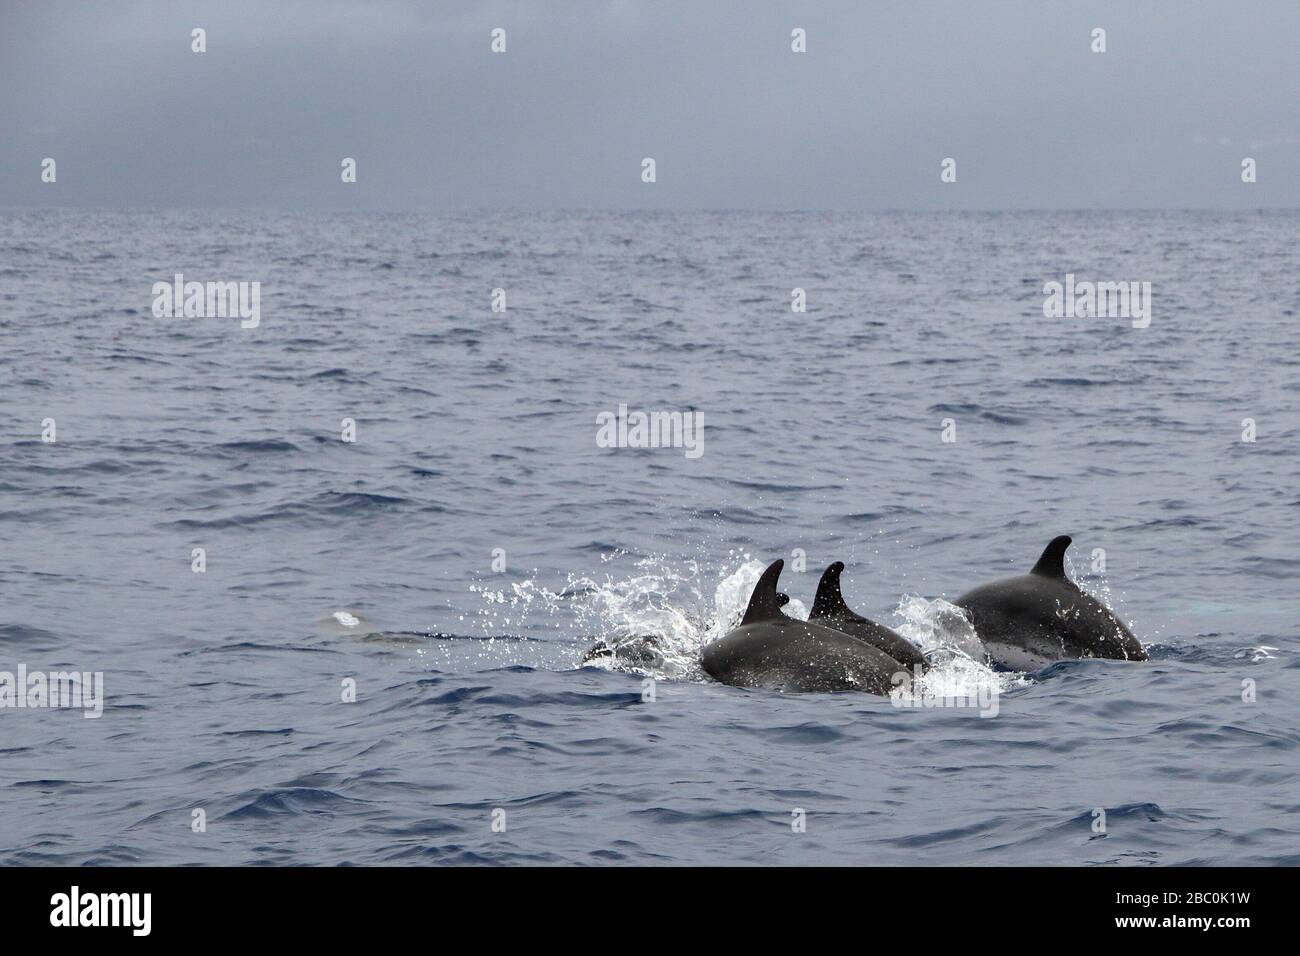 Un dauphin tacheté de l'Atlantique (Stenella frontalis) sautant hors de l'eau sur la côte de l'île de Pico aux Açores, Portugal. Banque D'Images